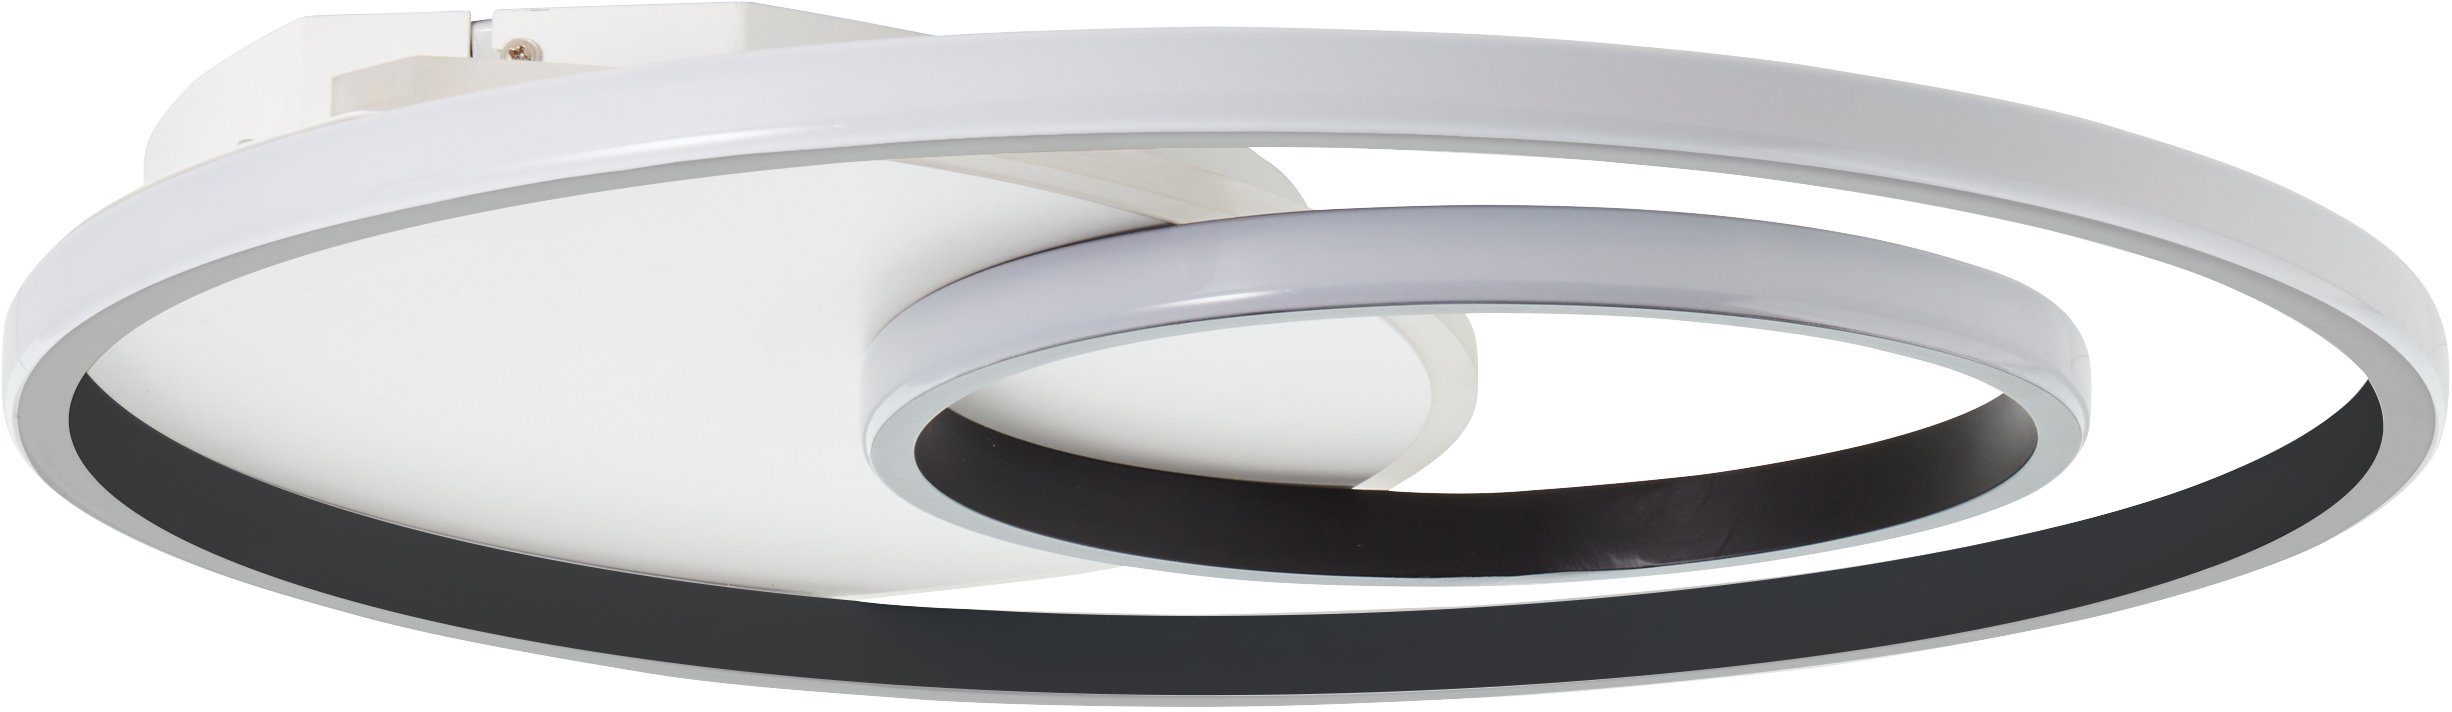 LED Lampe, Merapi, 3000K, Metall/Kunststof Deckenleuchte weiß/schwarz, 51x51cm Brilliant Merapi Deckenleuchte